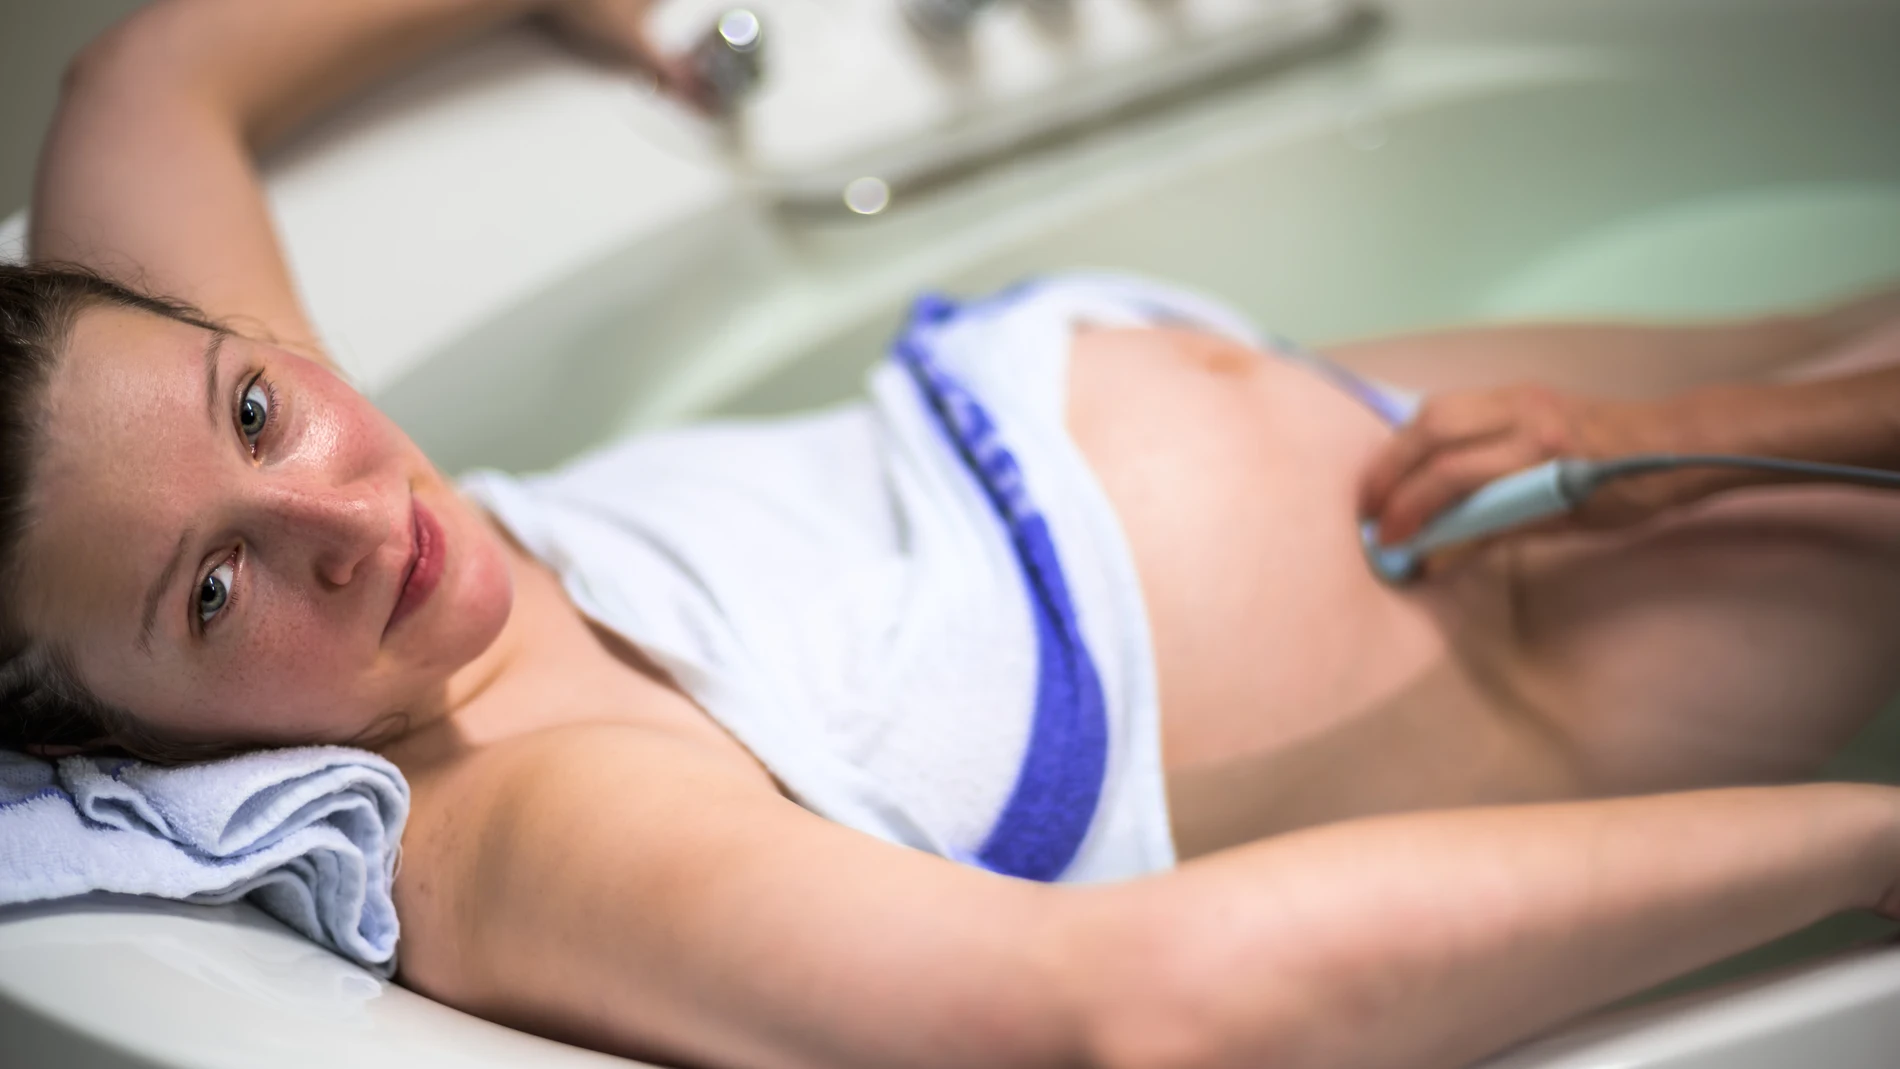 Hdroterapia durante el parto